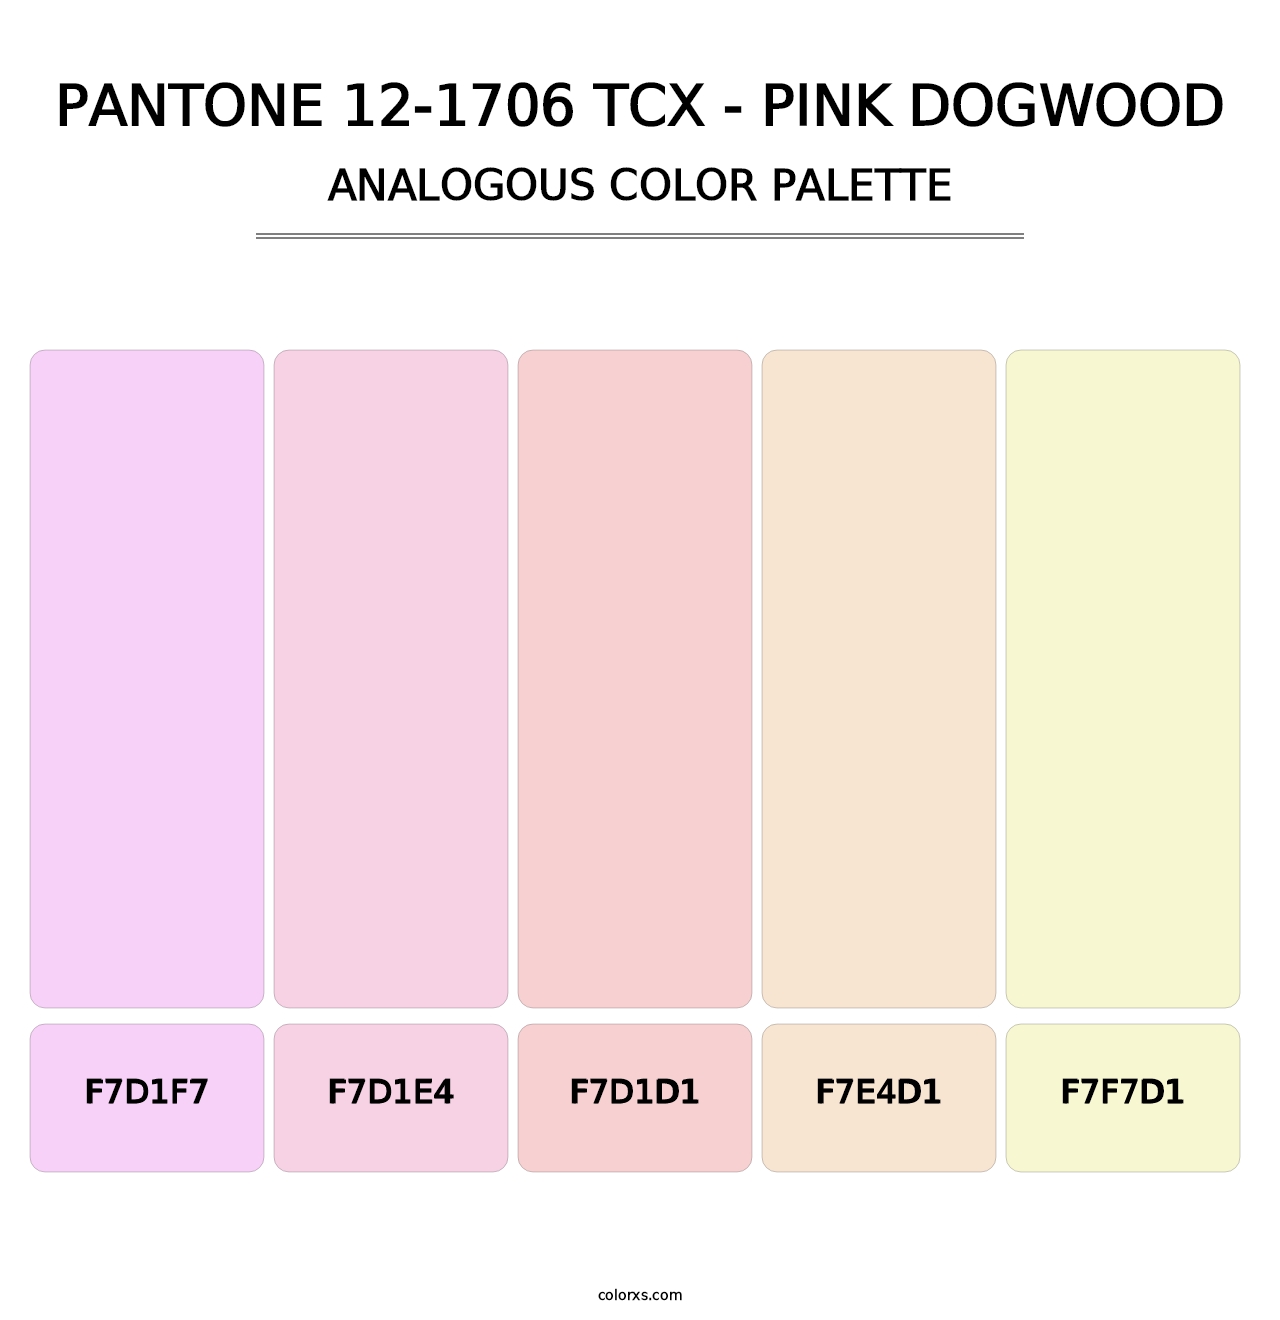 PANTONE 12-1706 TCX - Pink Dogwood - Analogous Color Palette